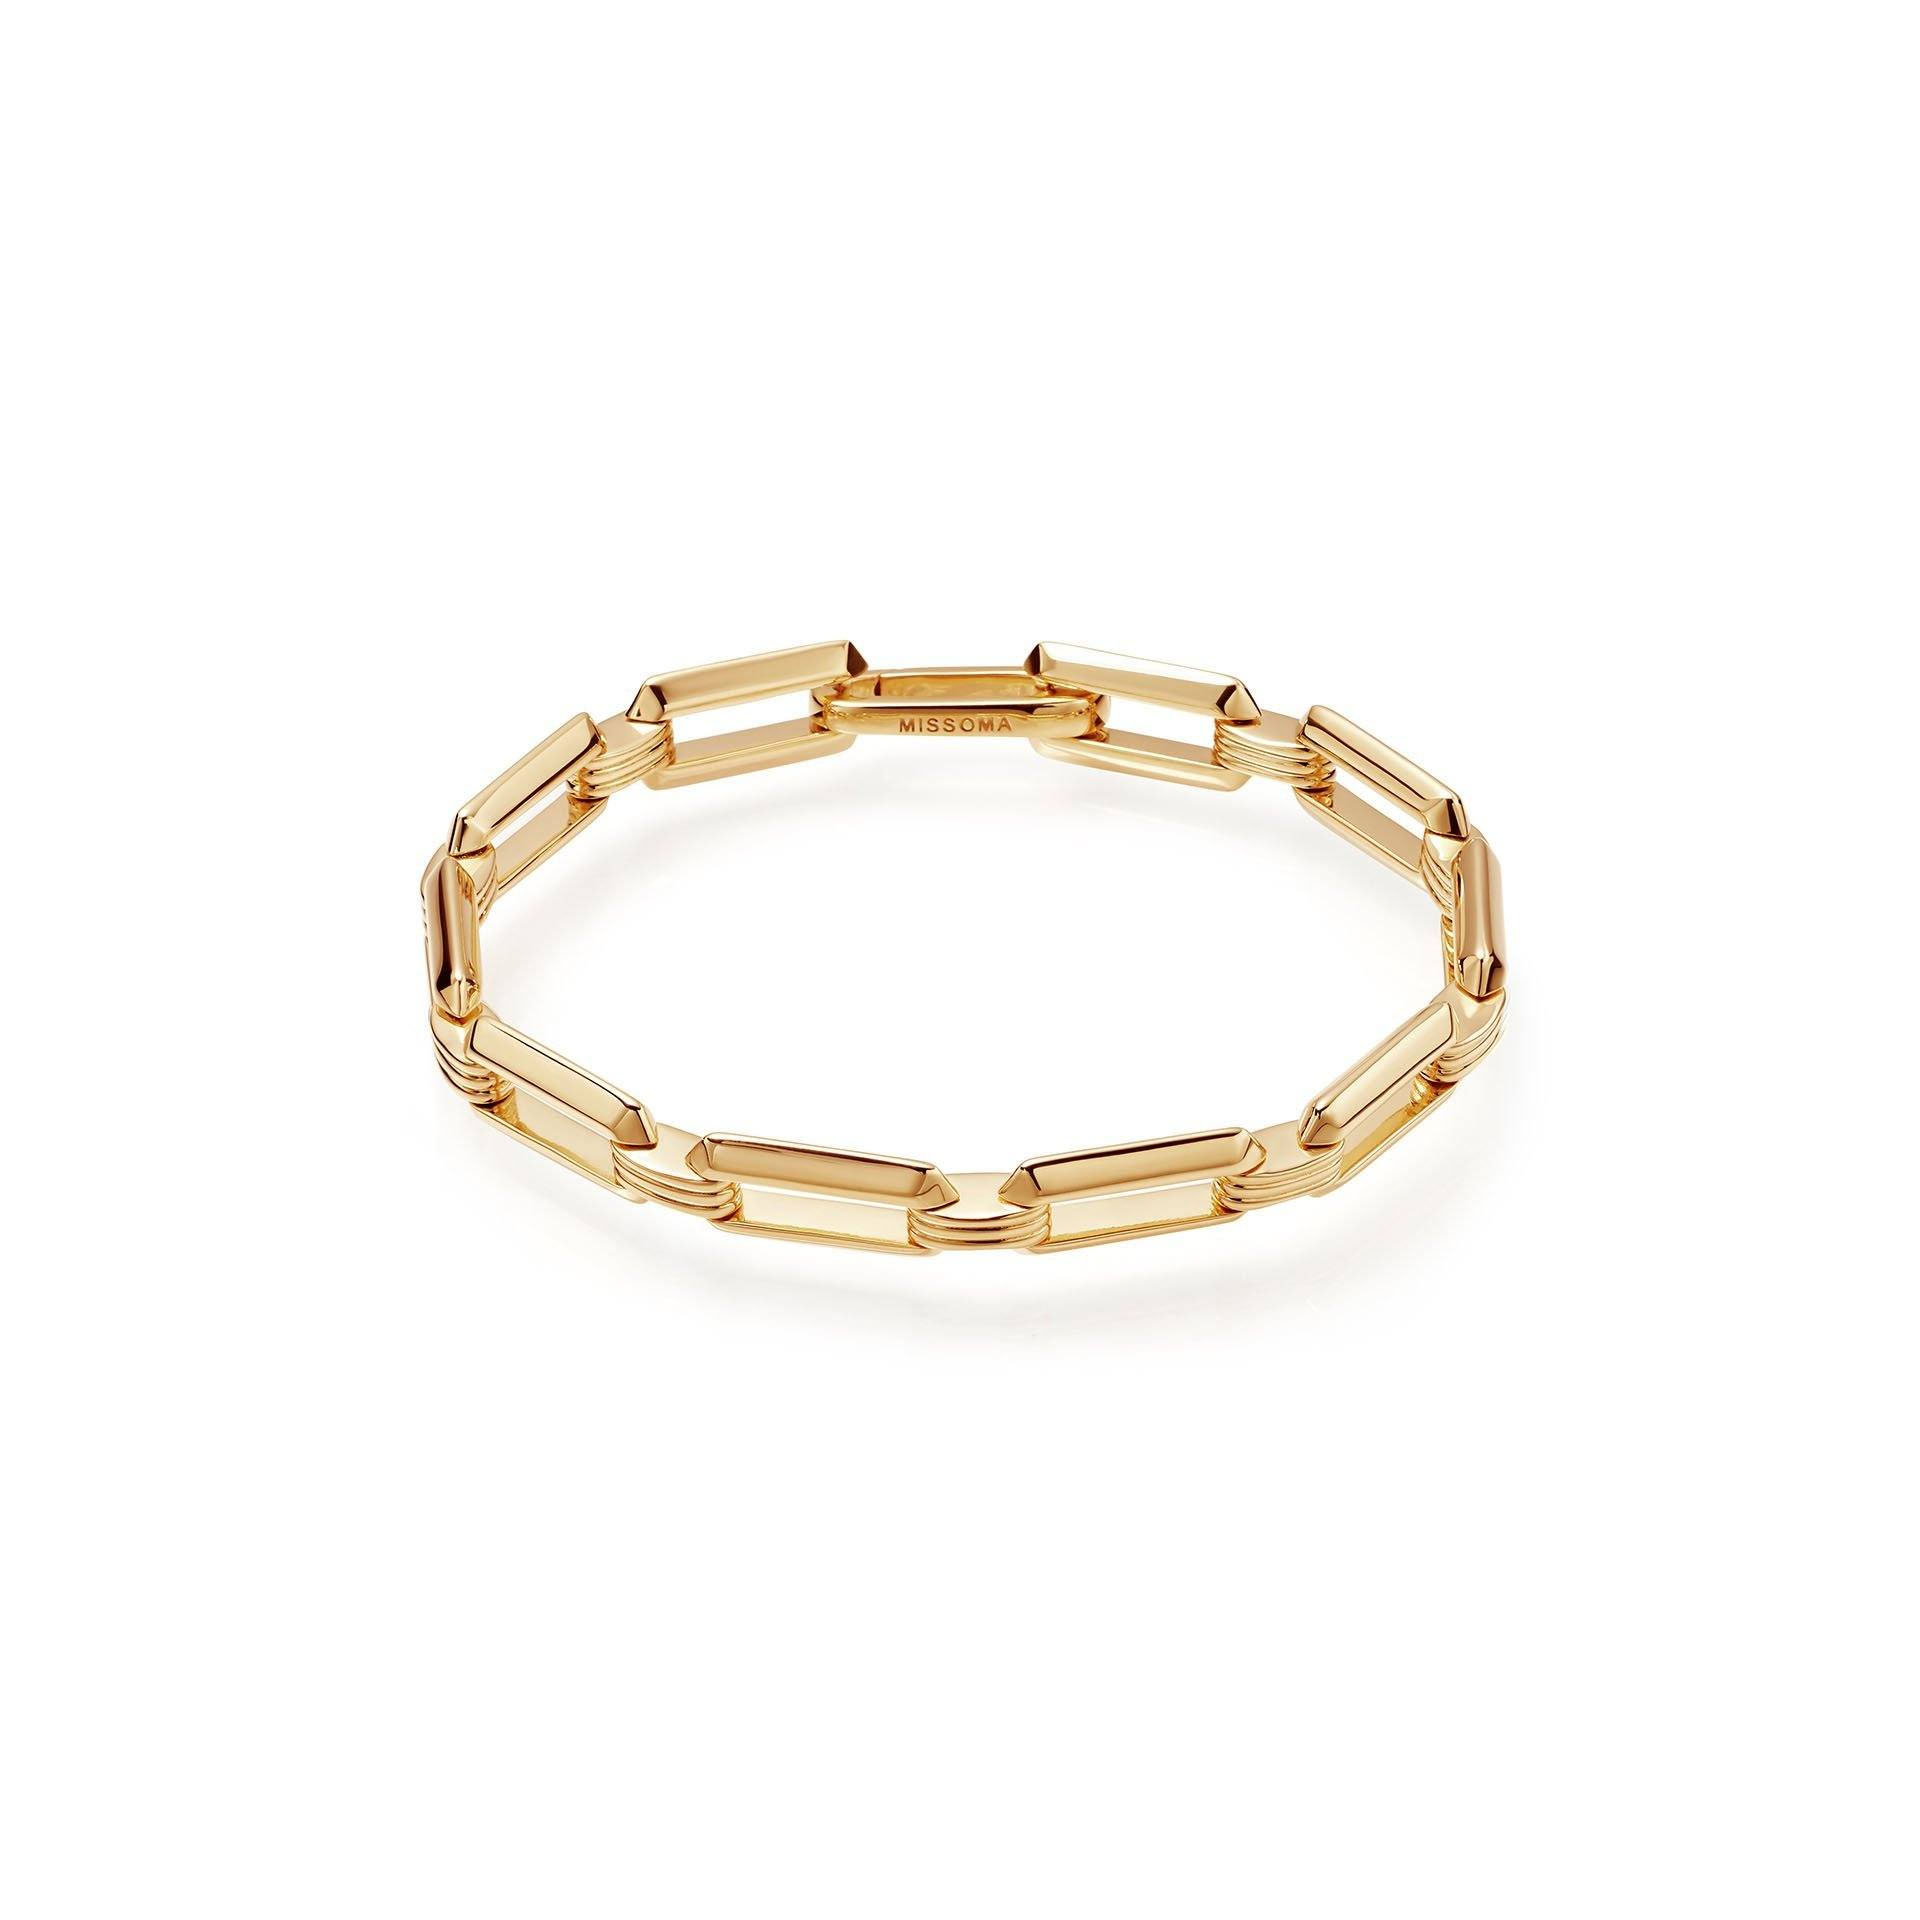 I braccialetti a catena OEM di gioielli OEM / ODM all'ingrosso placcati in oro 18 ct su ottone offrono le tue idee e progetti